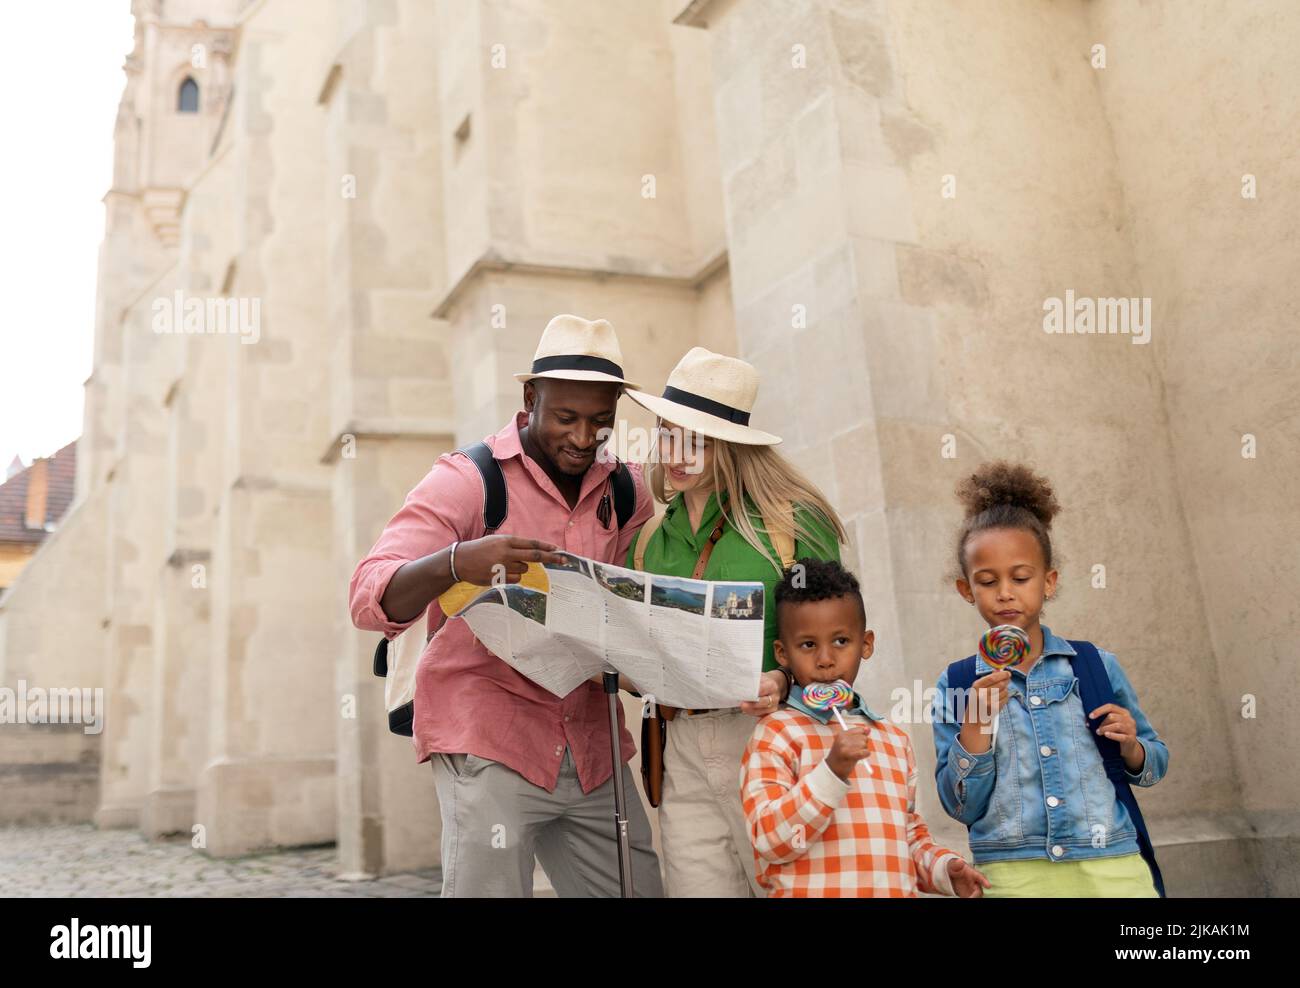 Les familles multiraciales voyagent ensemble dans le vieux centre-ville, en regardant la carte. Banque D'Images